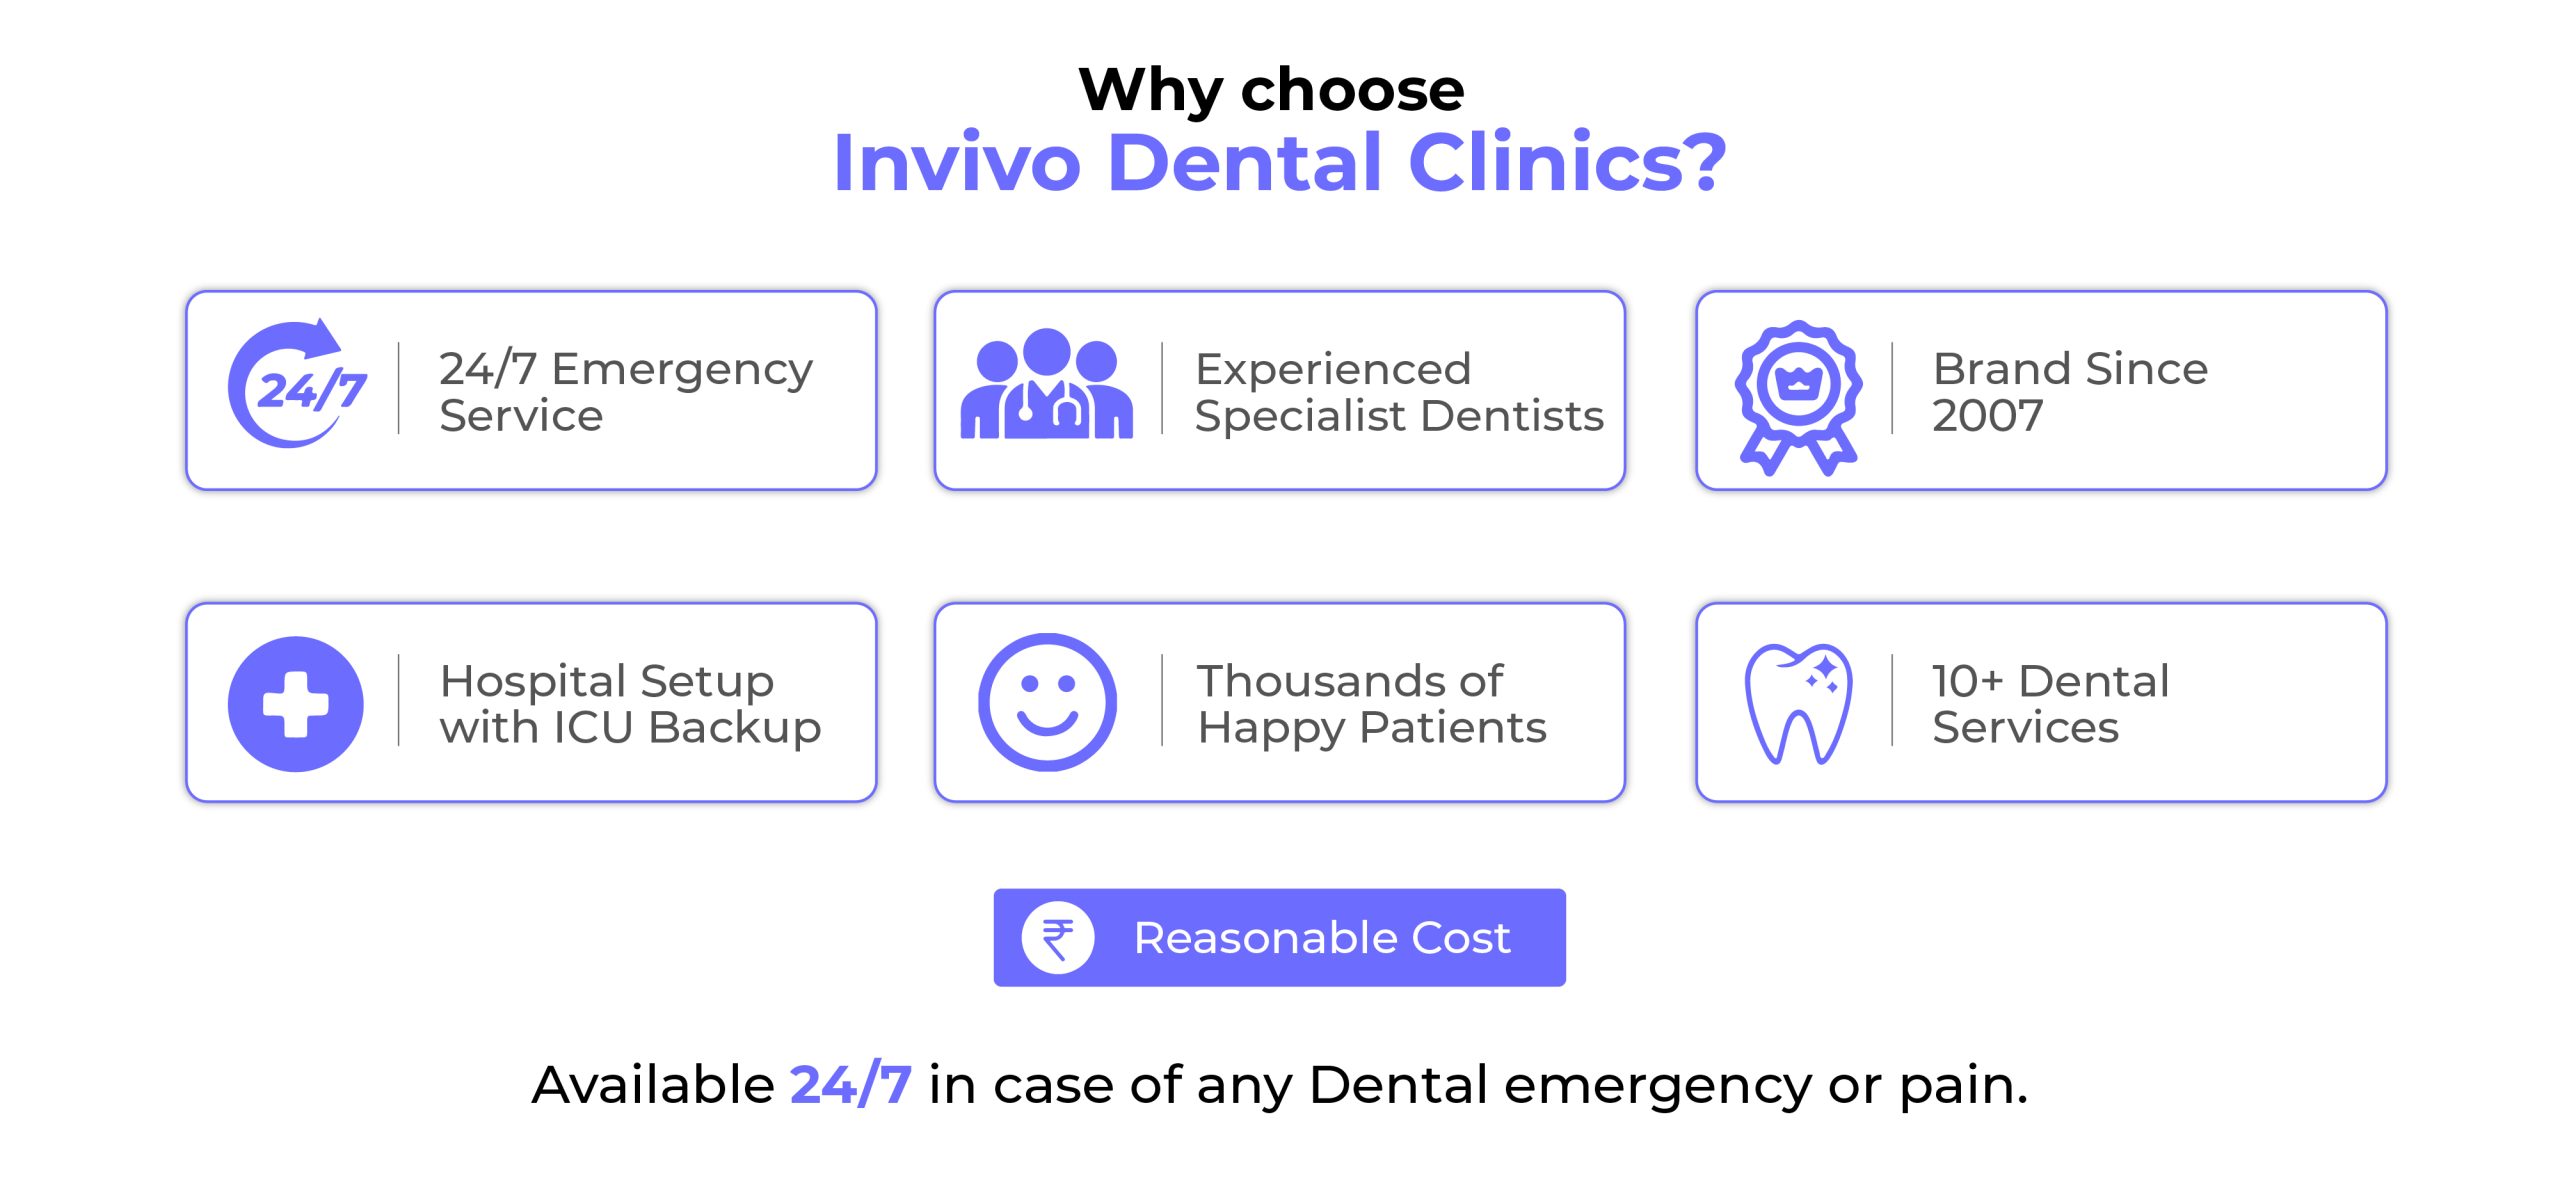 Why choose Invivo Dental Clinics